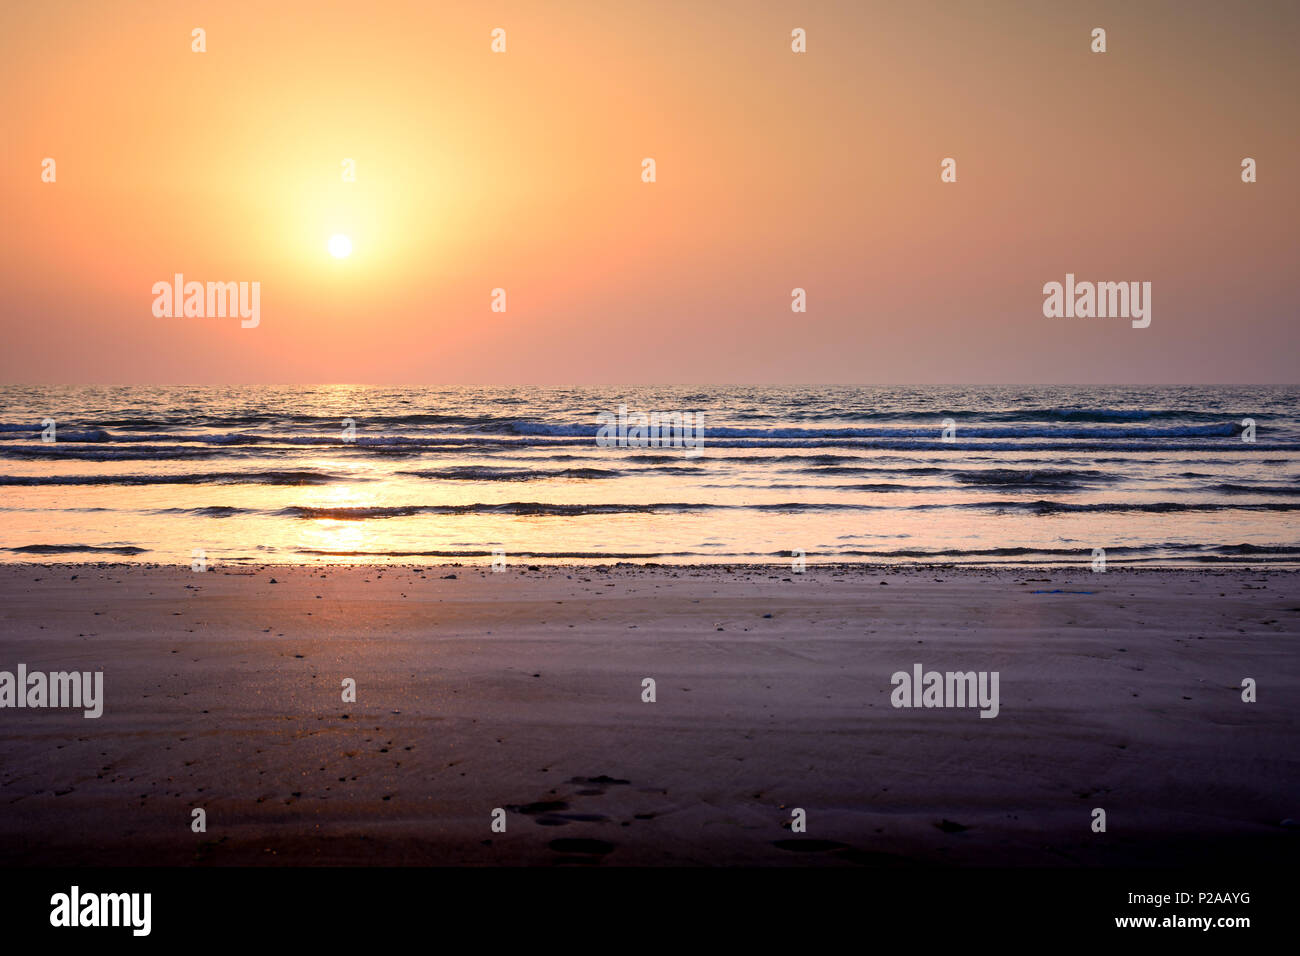 Seaside escena del atardecer en la playa, vacaciones de verano resumen Foto de stock